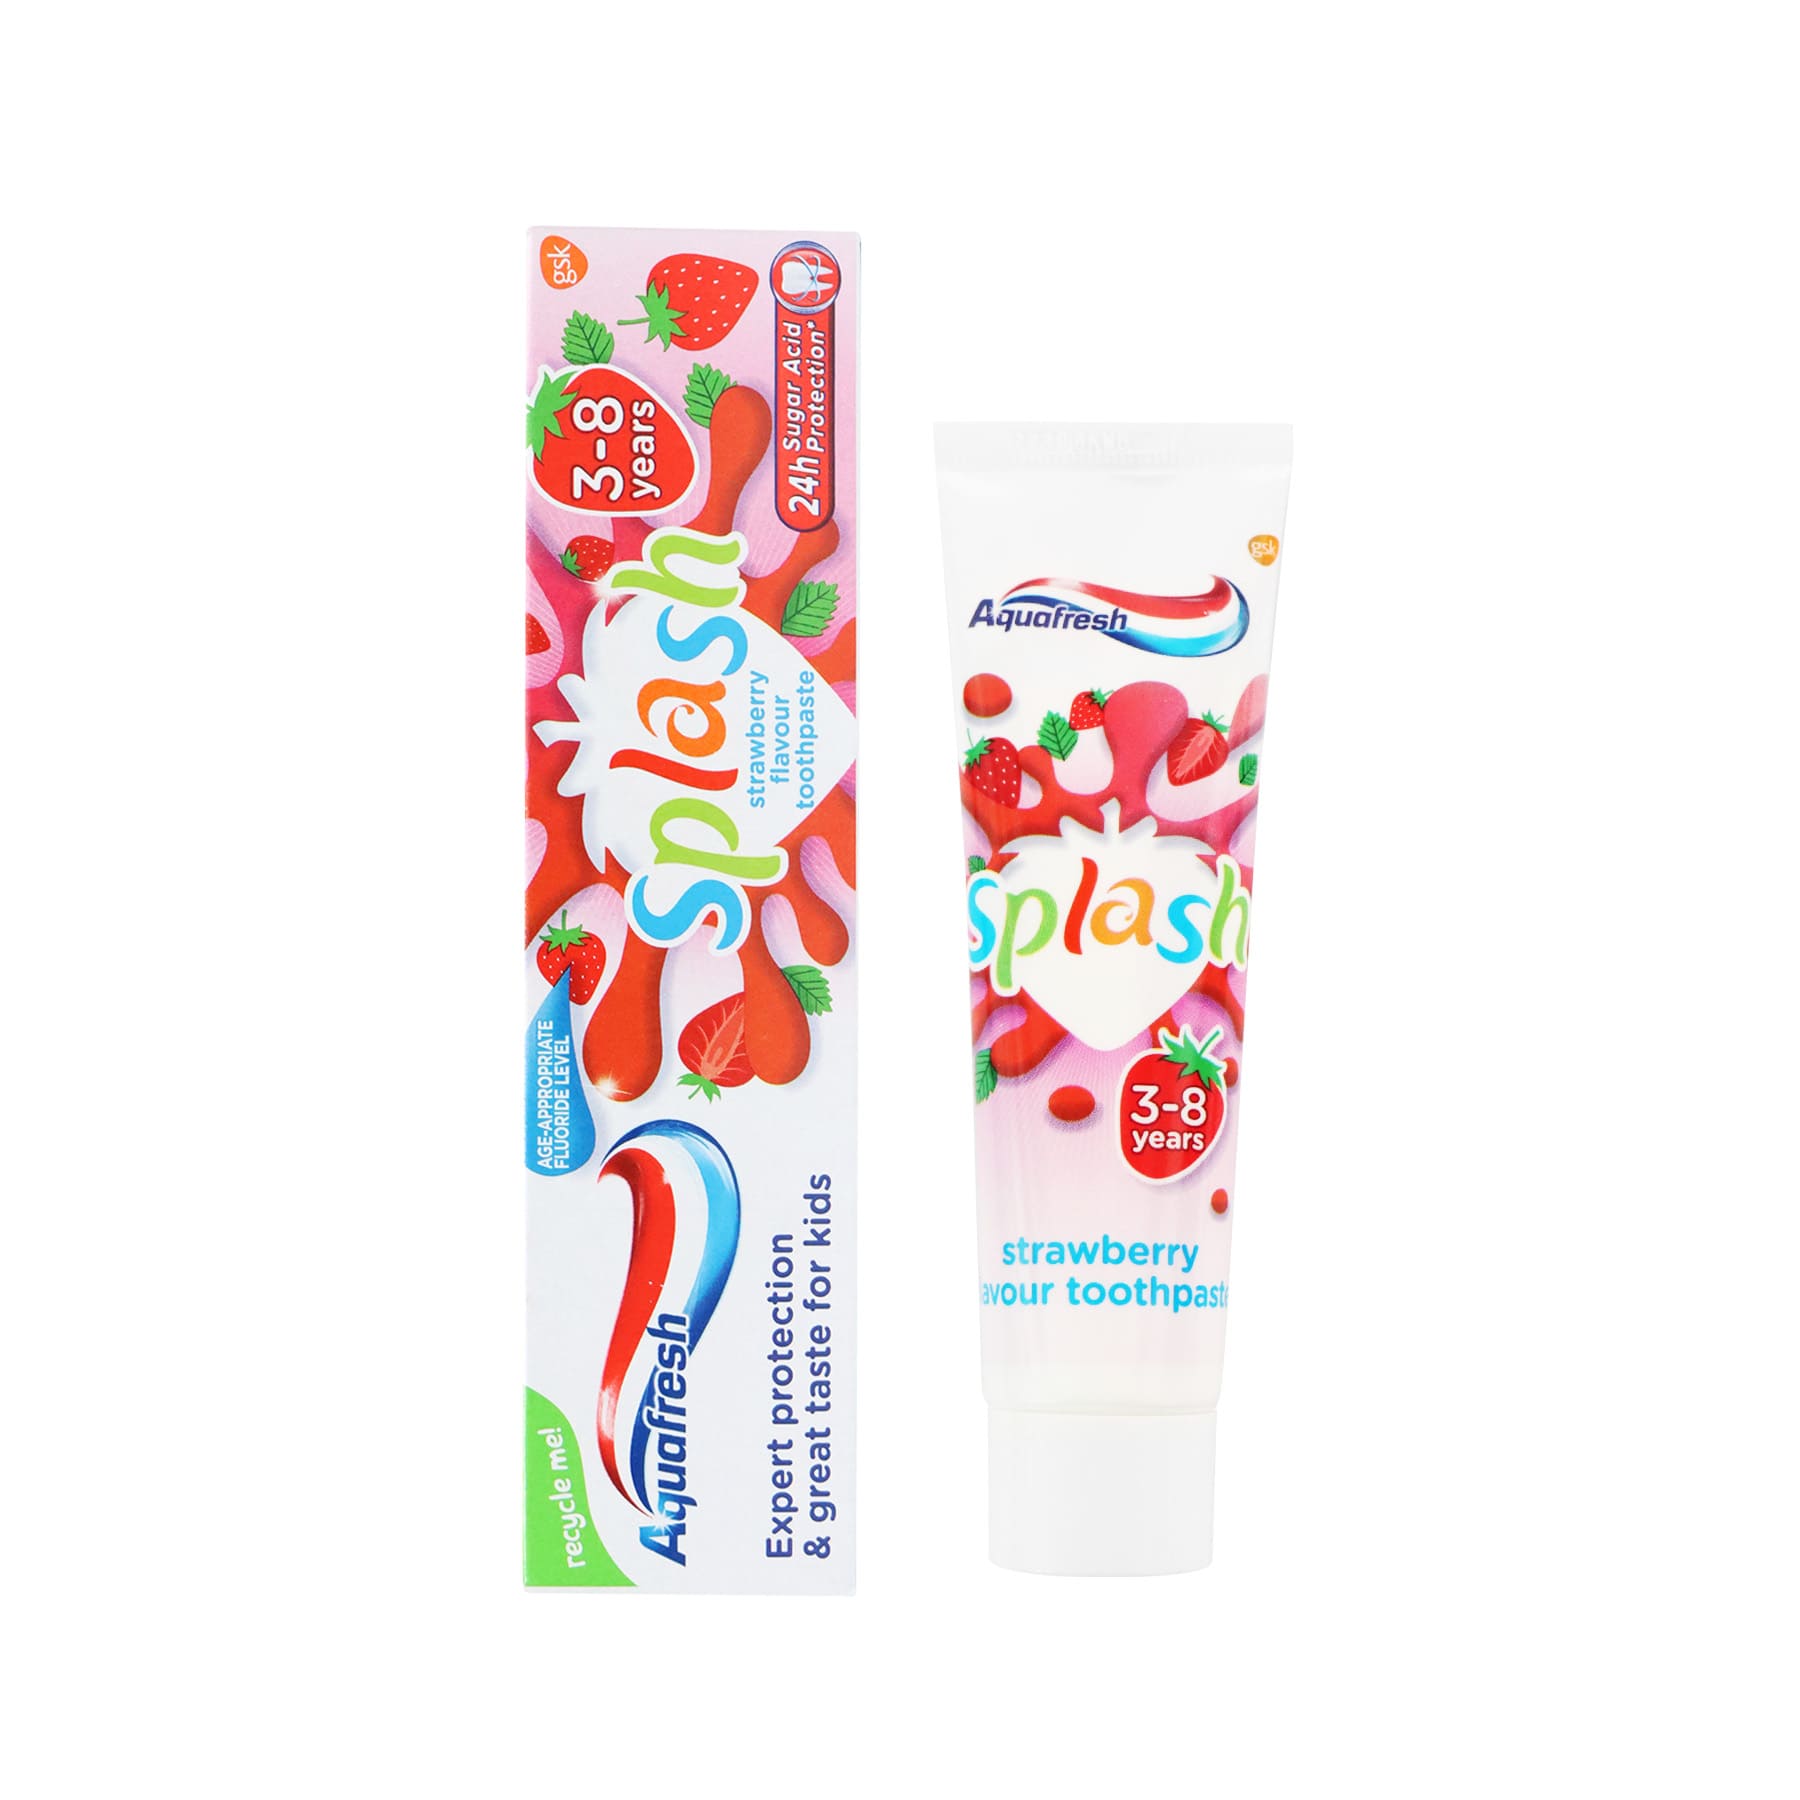 [GSK] Aquafresh Splash Kids Toothpaste 50ml (3-8 Years)